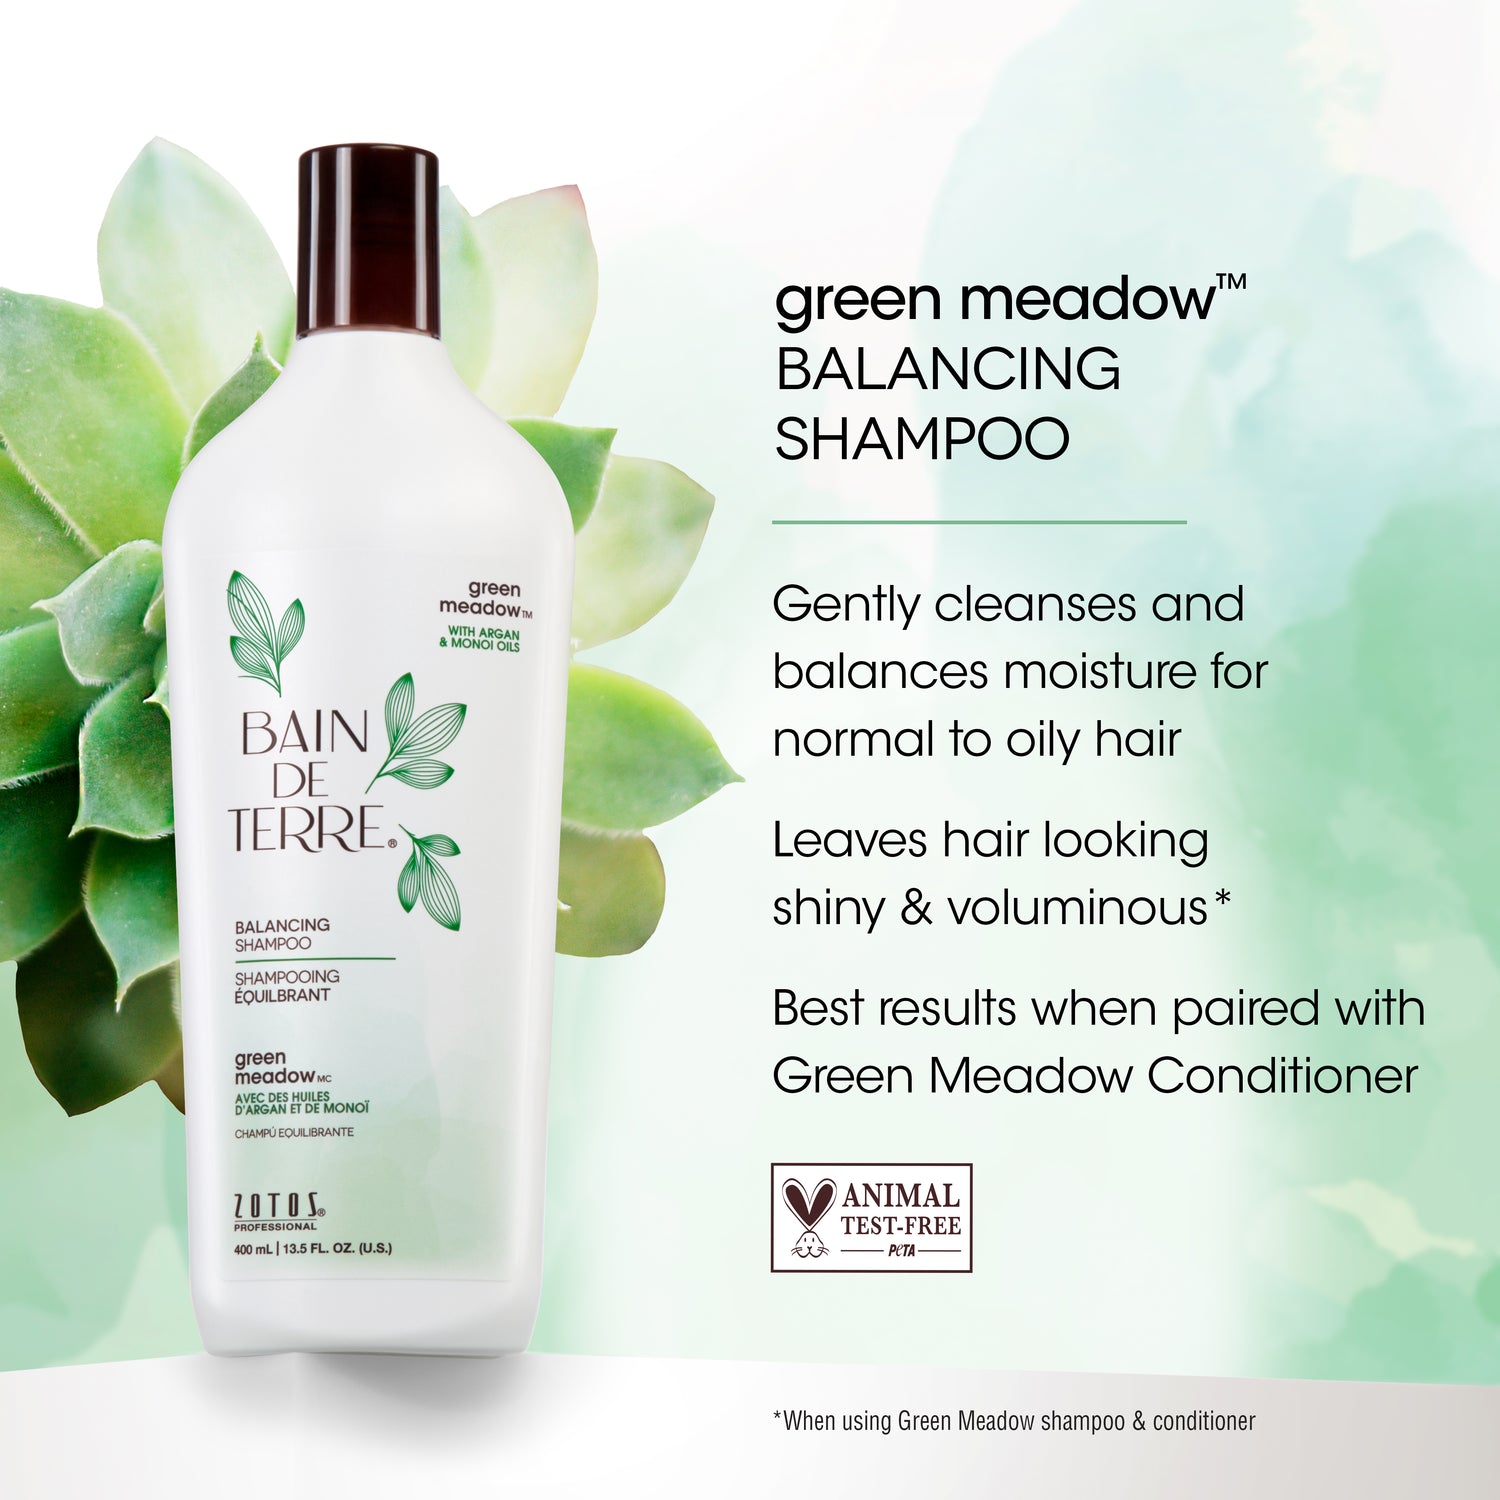 Bain de Terre® Balancing Shampoo, Green Meadow